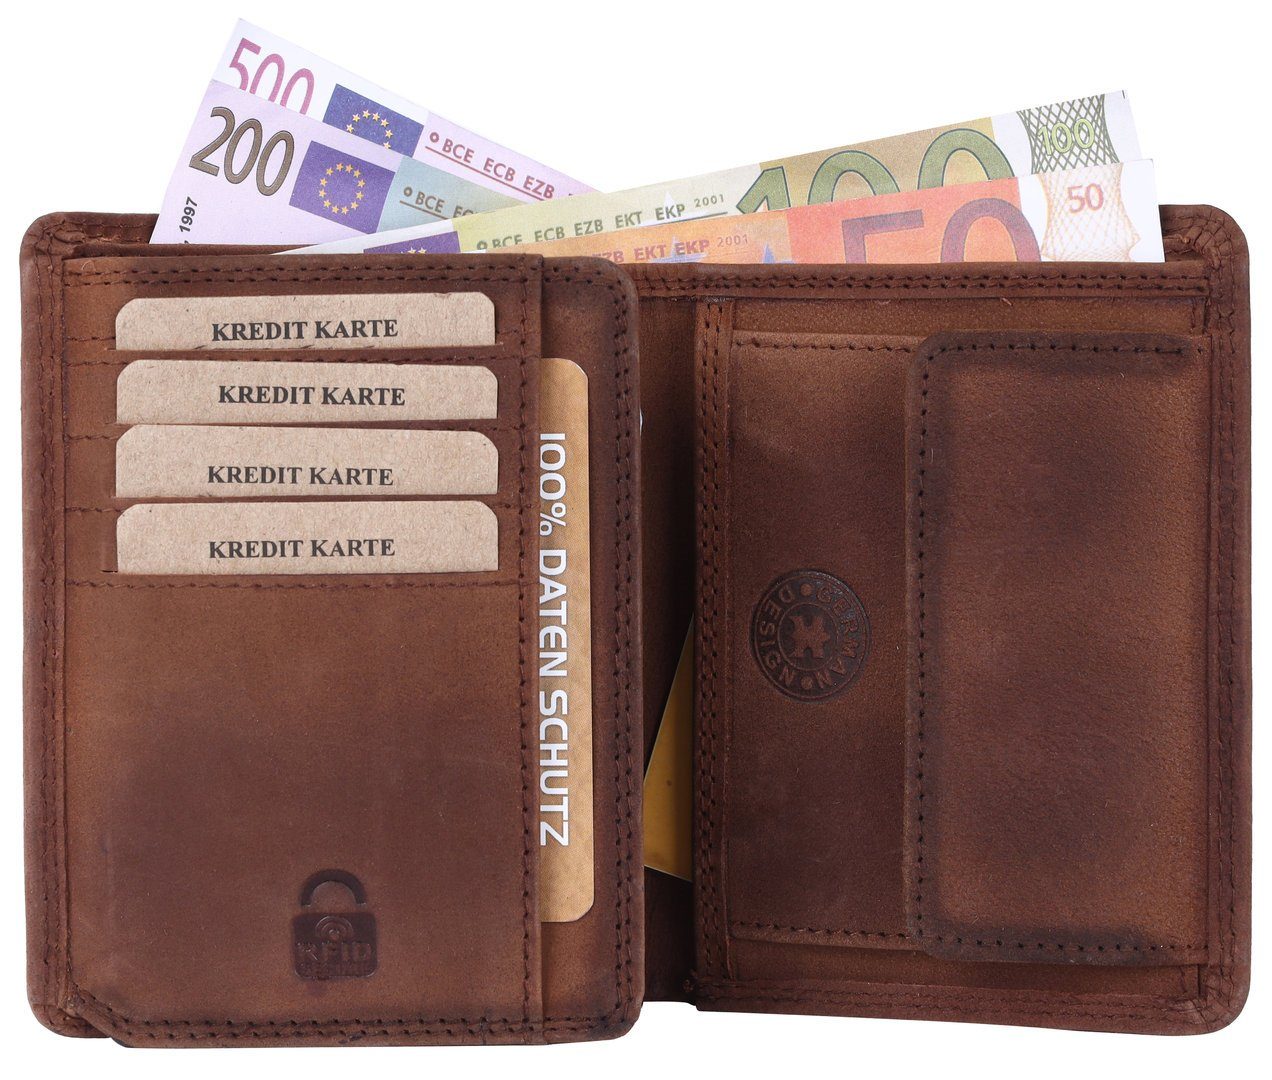 Lederbörse Münzfach Leder Portemonnaie, mit Männerbörse Geldbörse Brieftasche RFID Schutz mit Börse Kette Herren Büffelleder SHG